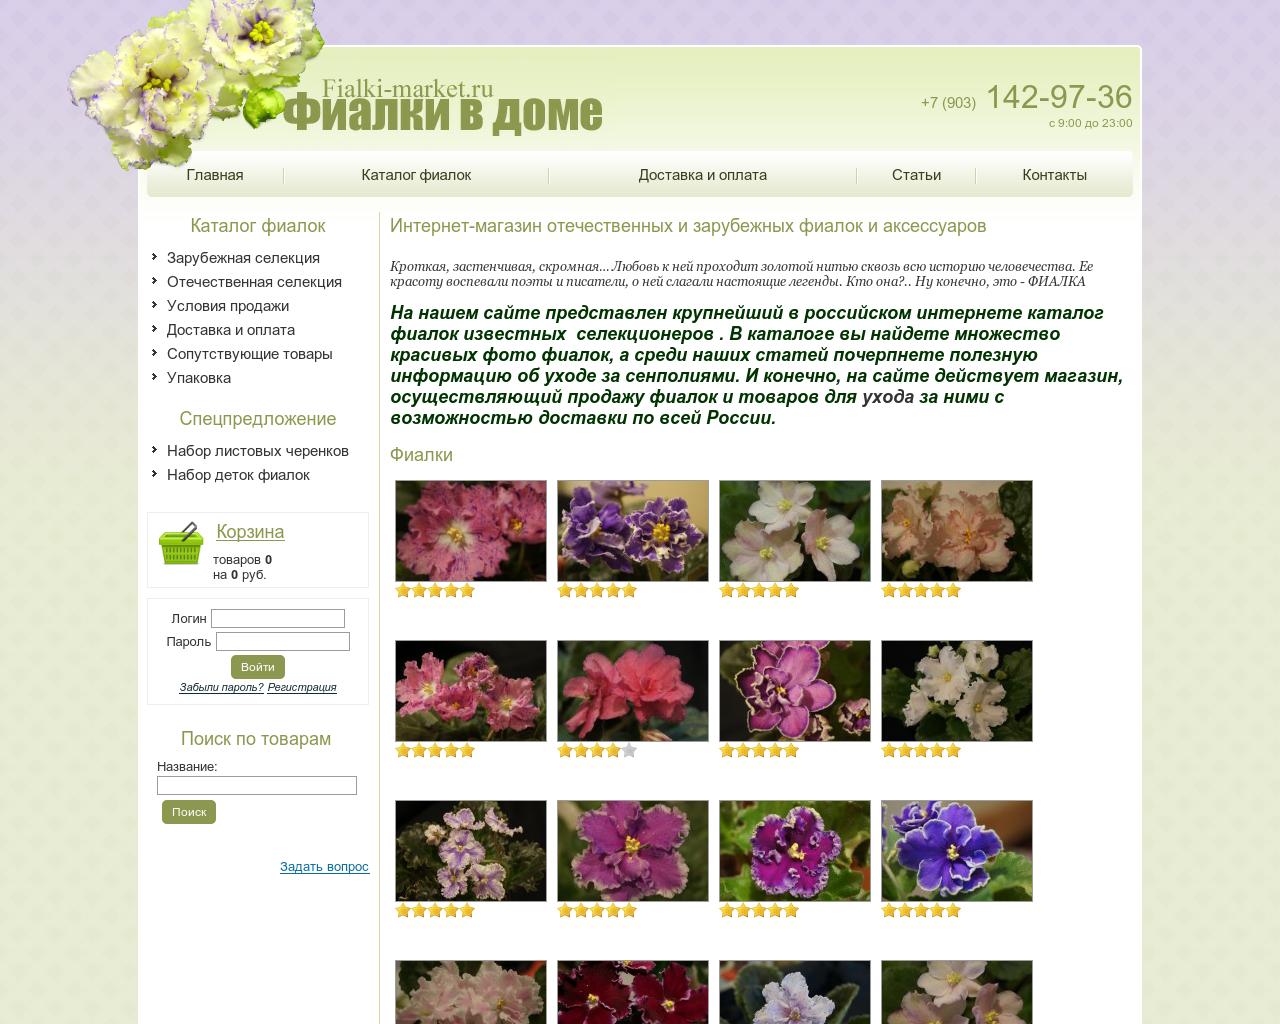 Изображение сайта fialki-market.ru в разрешении 1280x1024